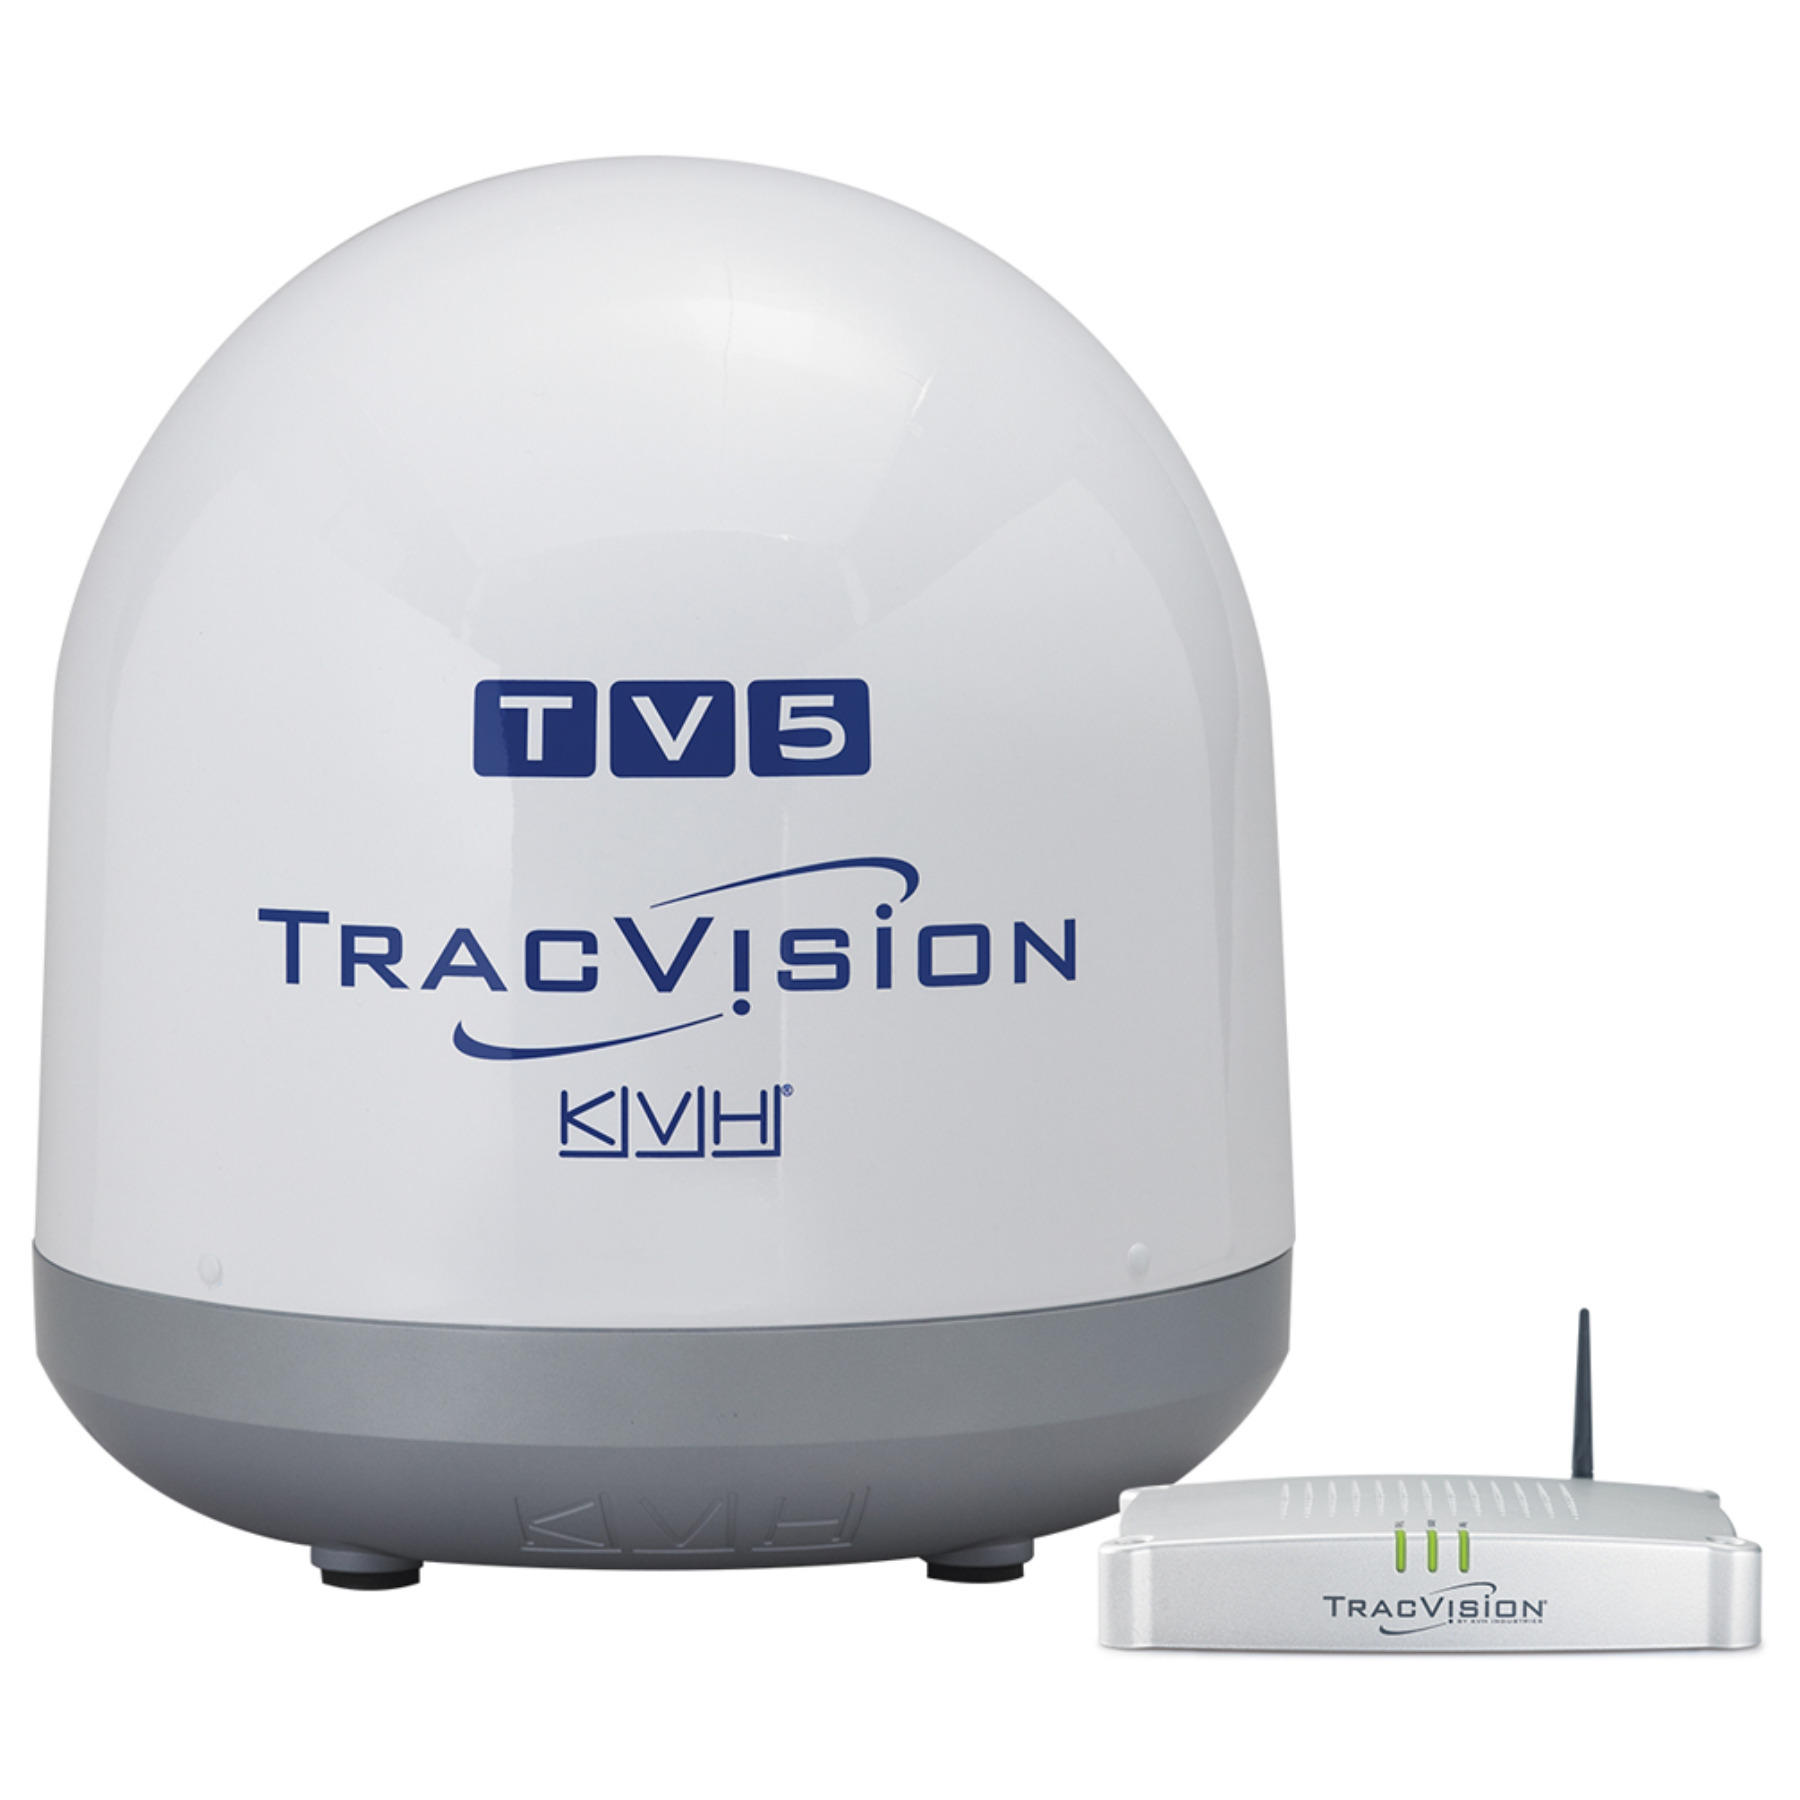 Спутниковая антенна на яхту KVH TracVision TV5